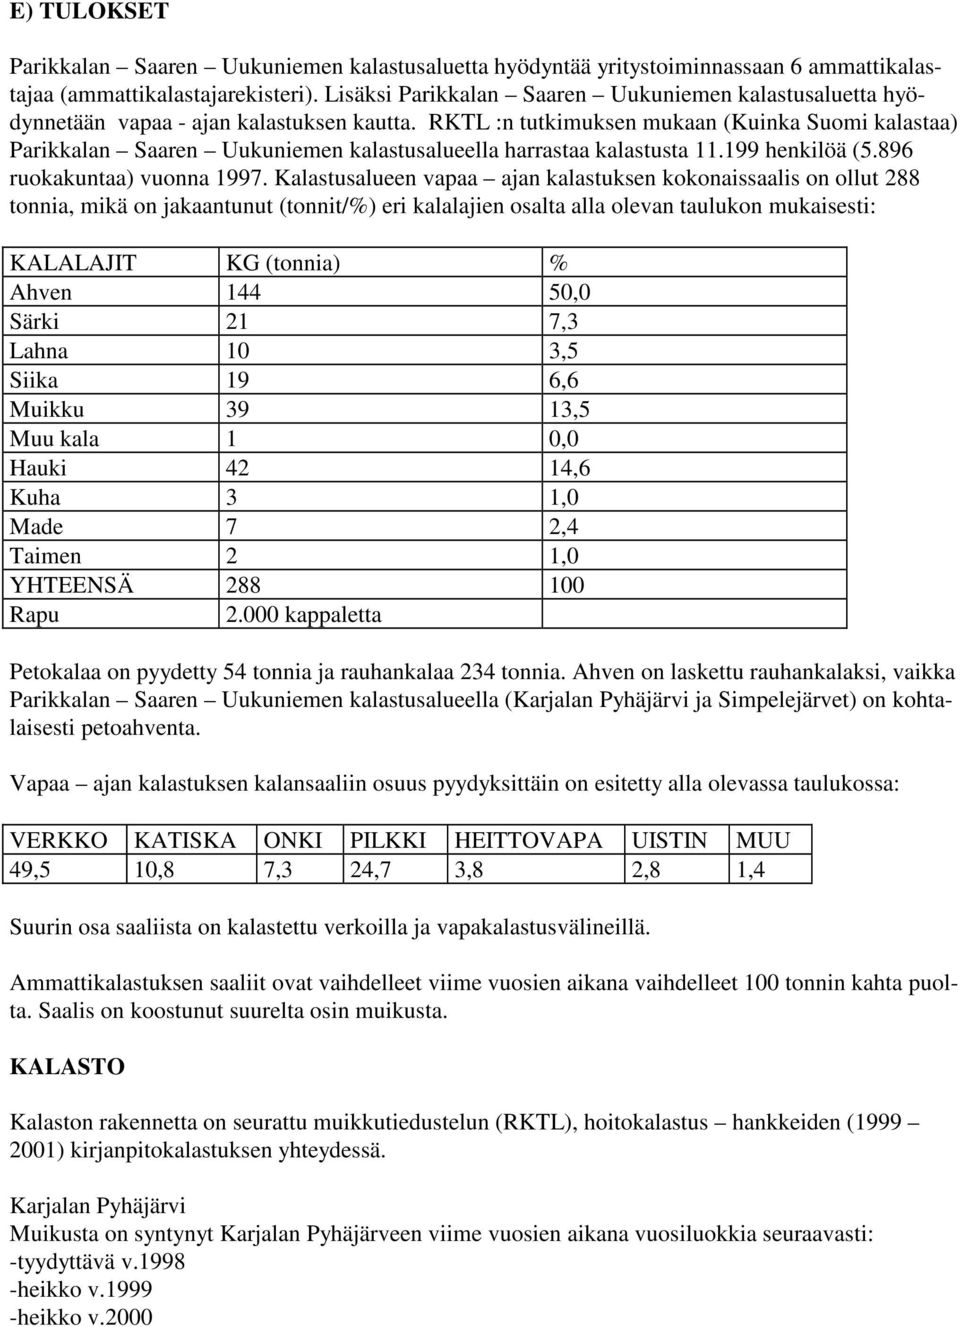 RKTL :n tutkimuksen mukaan (Kuinka Suomi kalastaa) Parikkalan Saaren Uukuniemen kalastusalueella harrastaa kalastusta 11.199 henkilöä (5.896 ruokakuntaa) vuonna 1997.